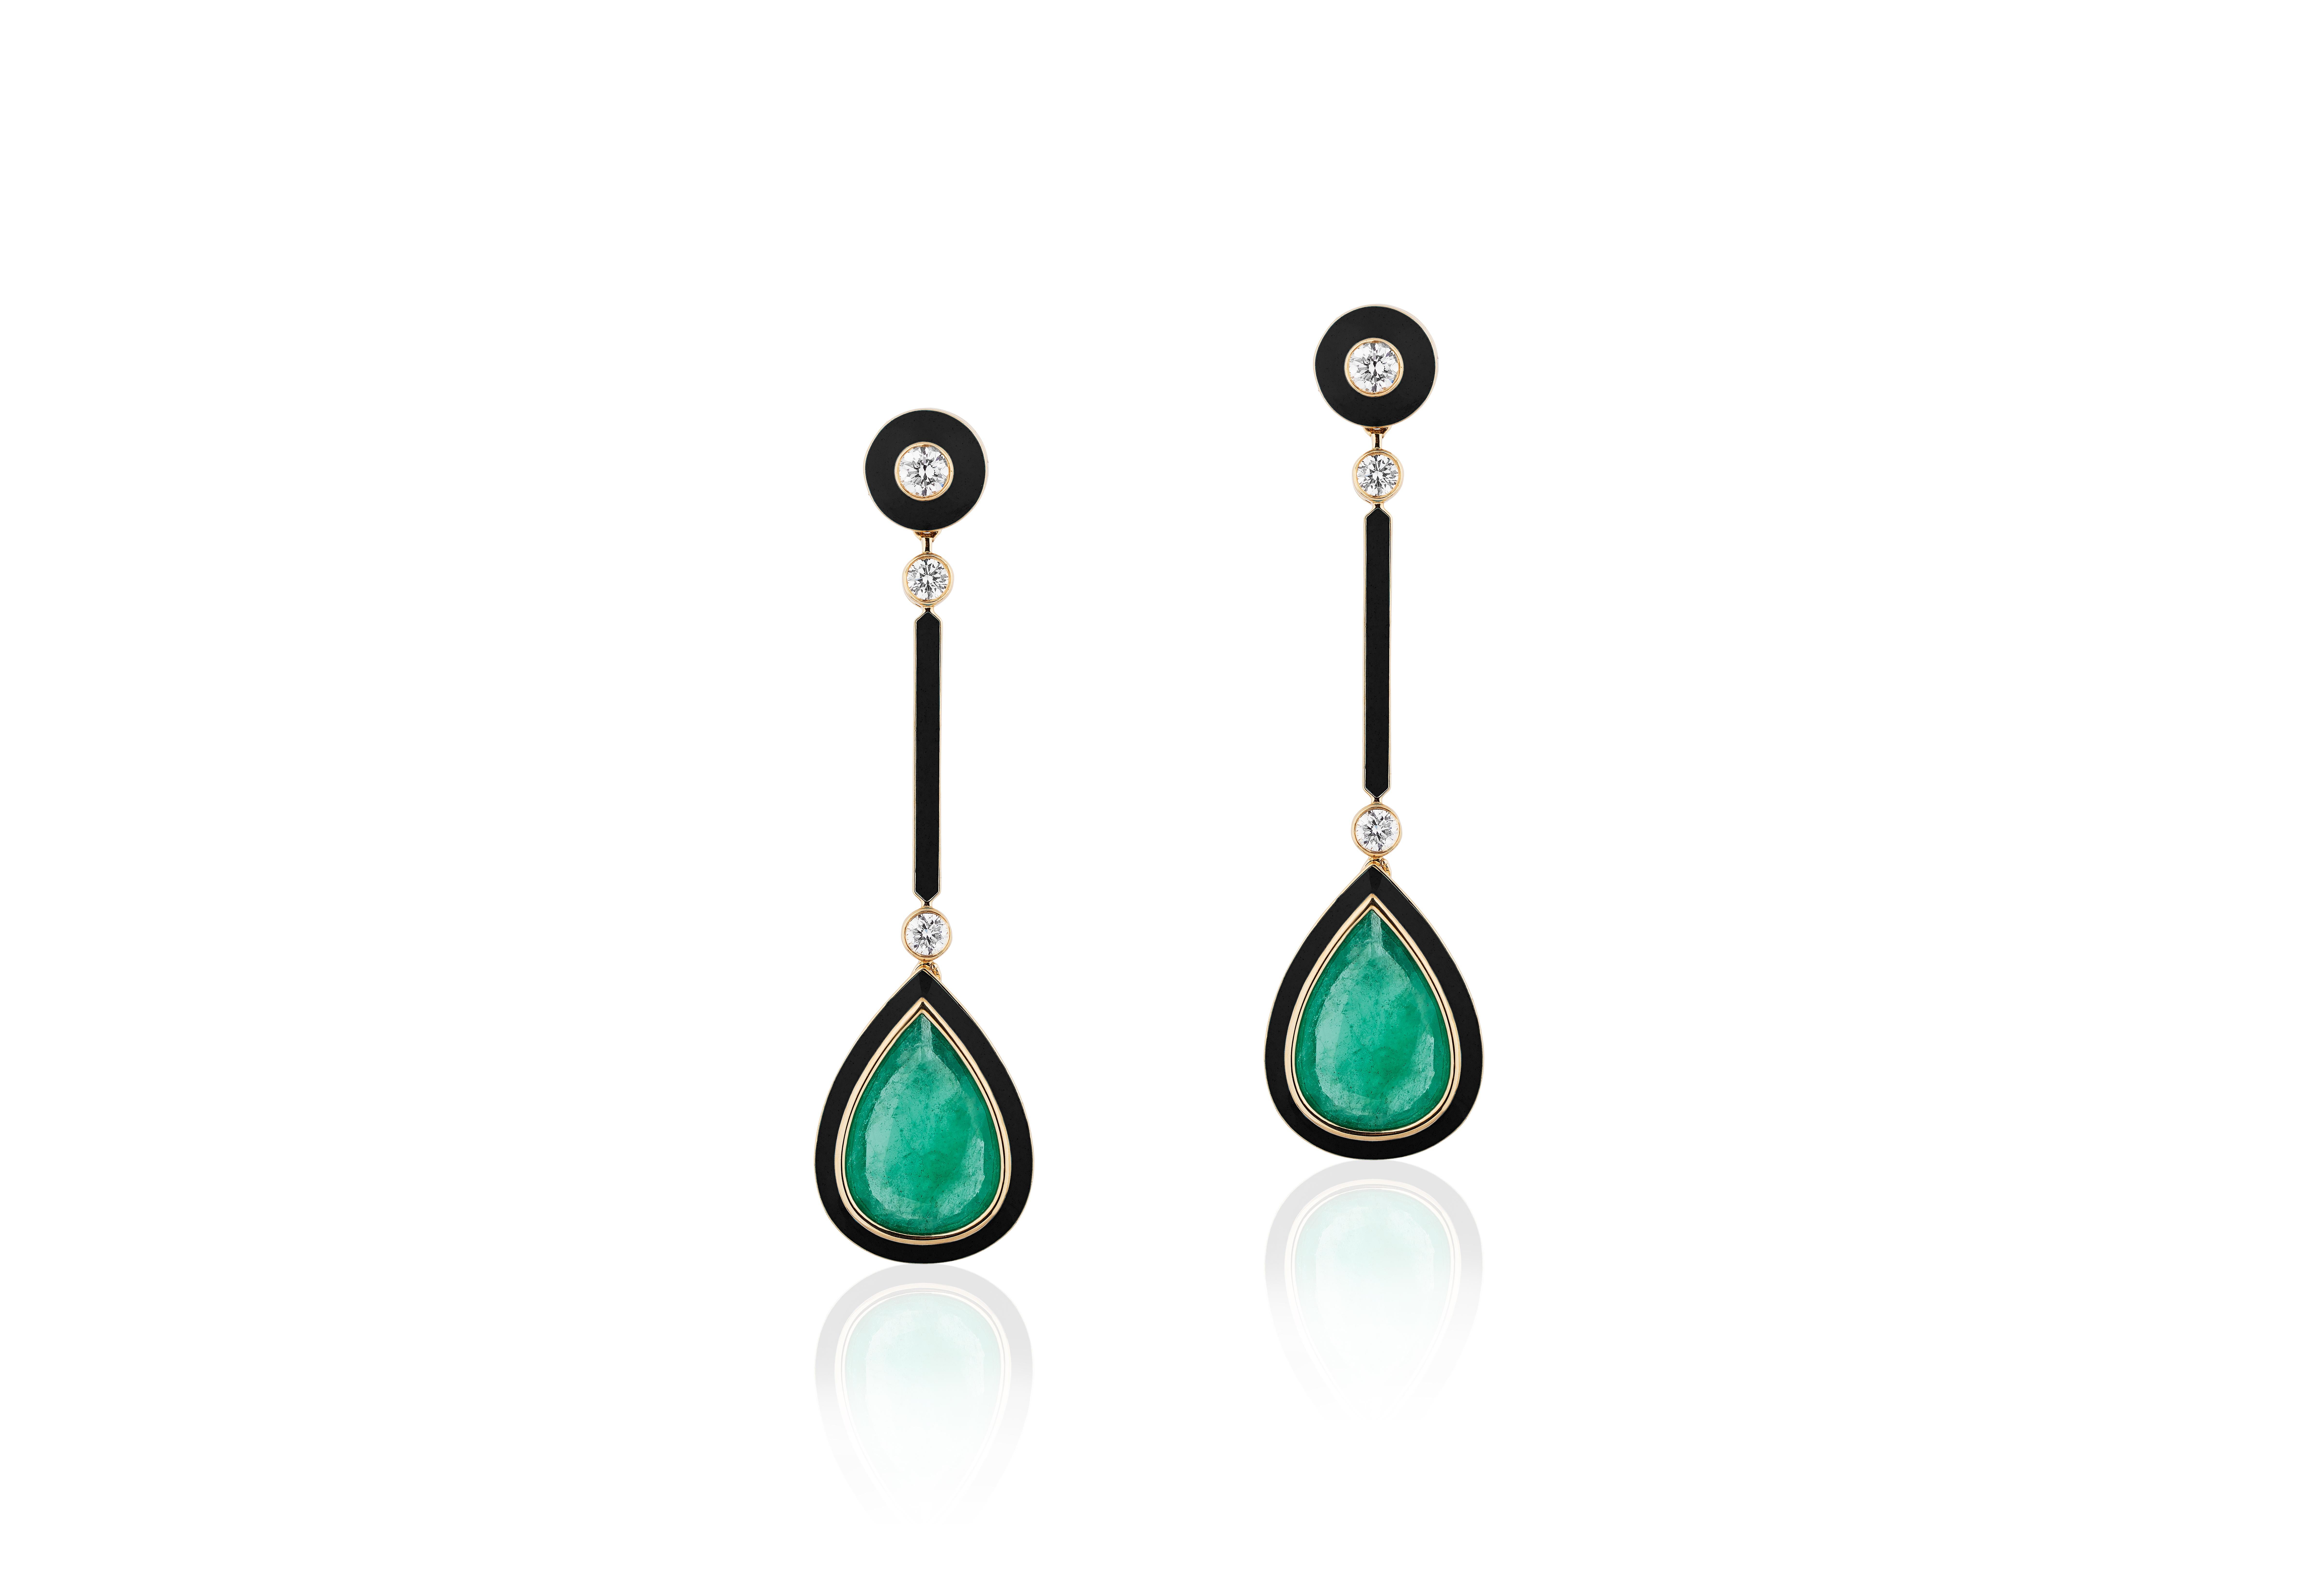 Pear Shape Emerald & Onyx Earrings with Diamonds & Black Enamel in 18K Yellow Gold, from 